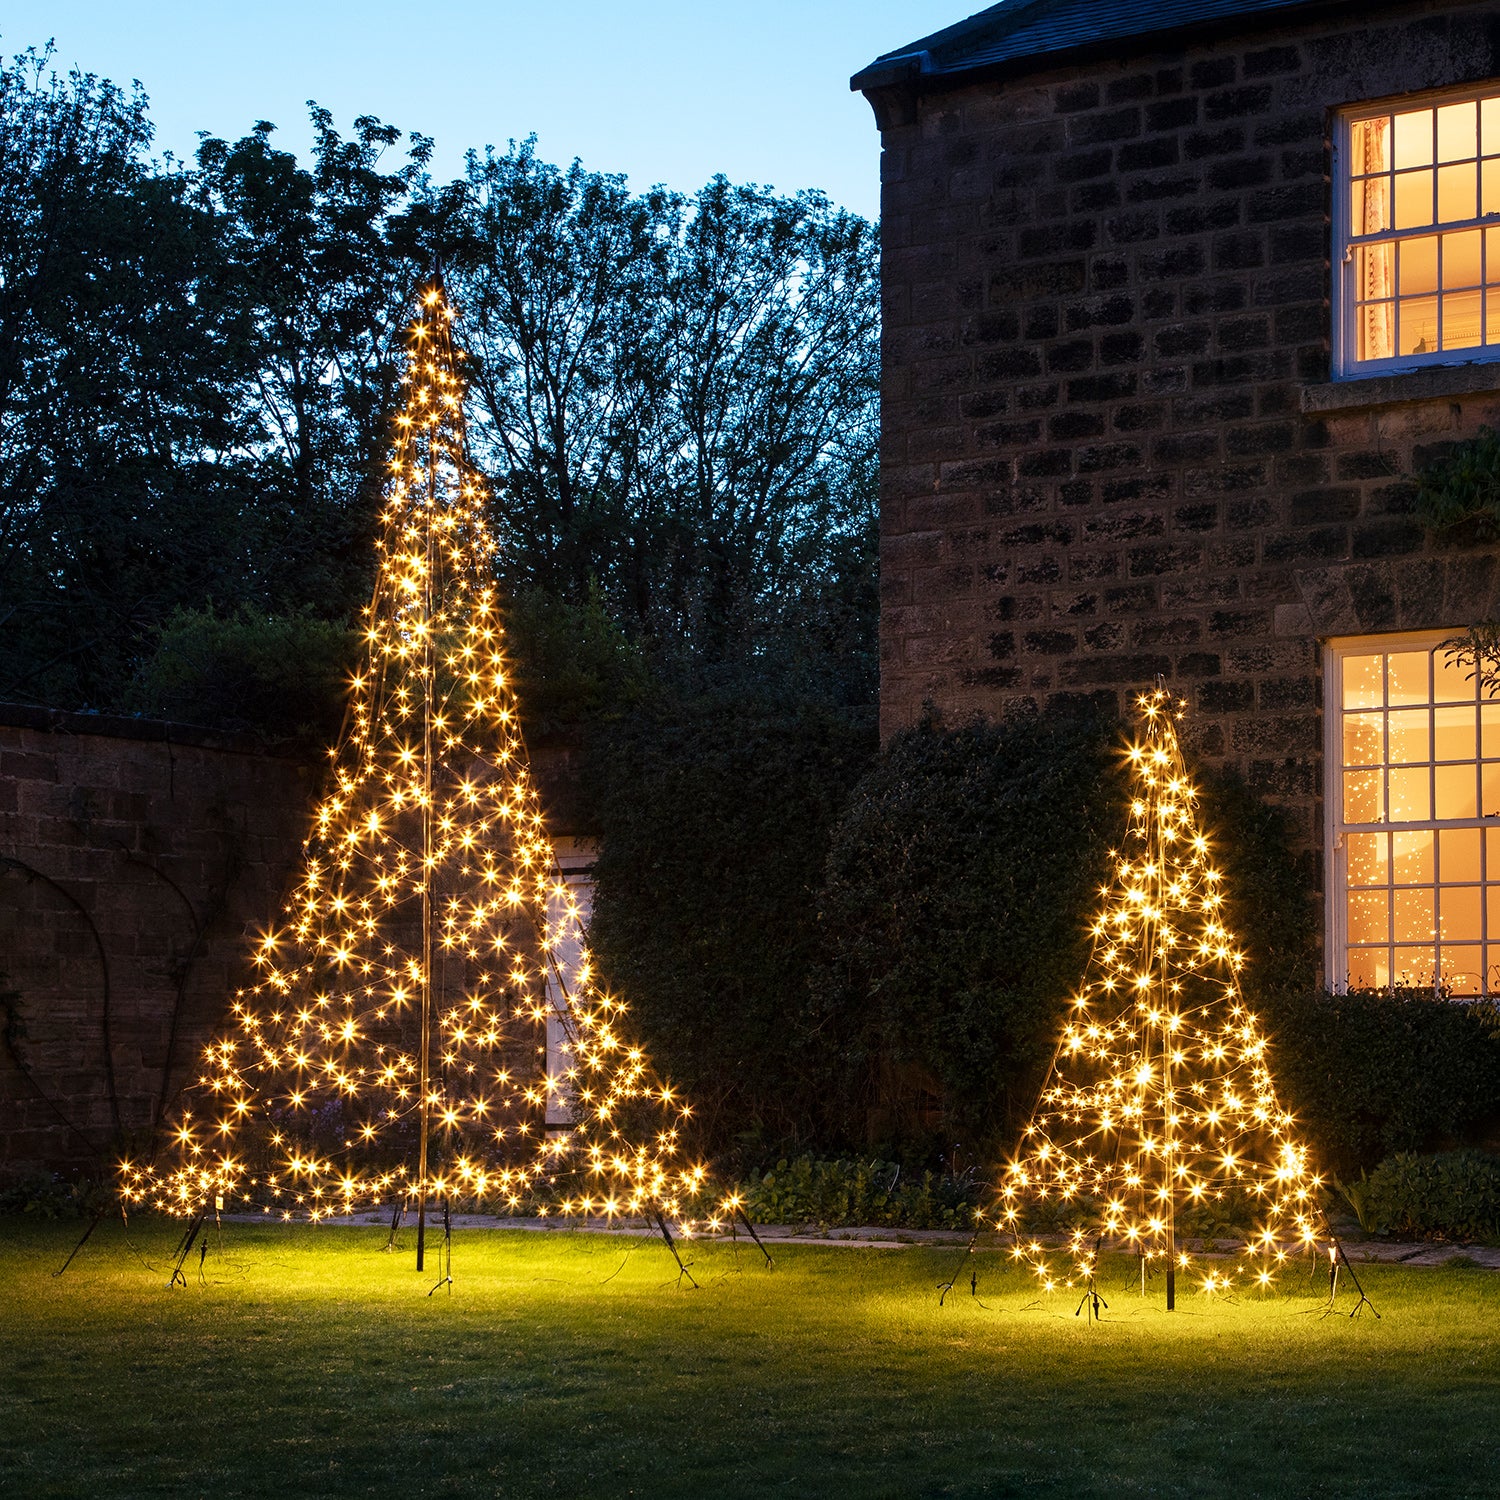 http://www.lights4fun.de/cdn/shop/products/EU-L4F180378_Fairybell-LED-Baume-Aussen-Weihnachtsbeleuchtung-Garten_P1.jpg?v=1574075707&width=1500